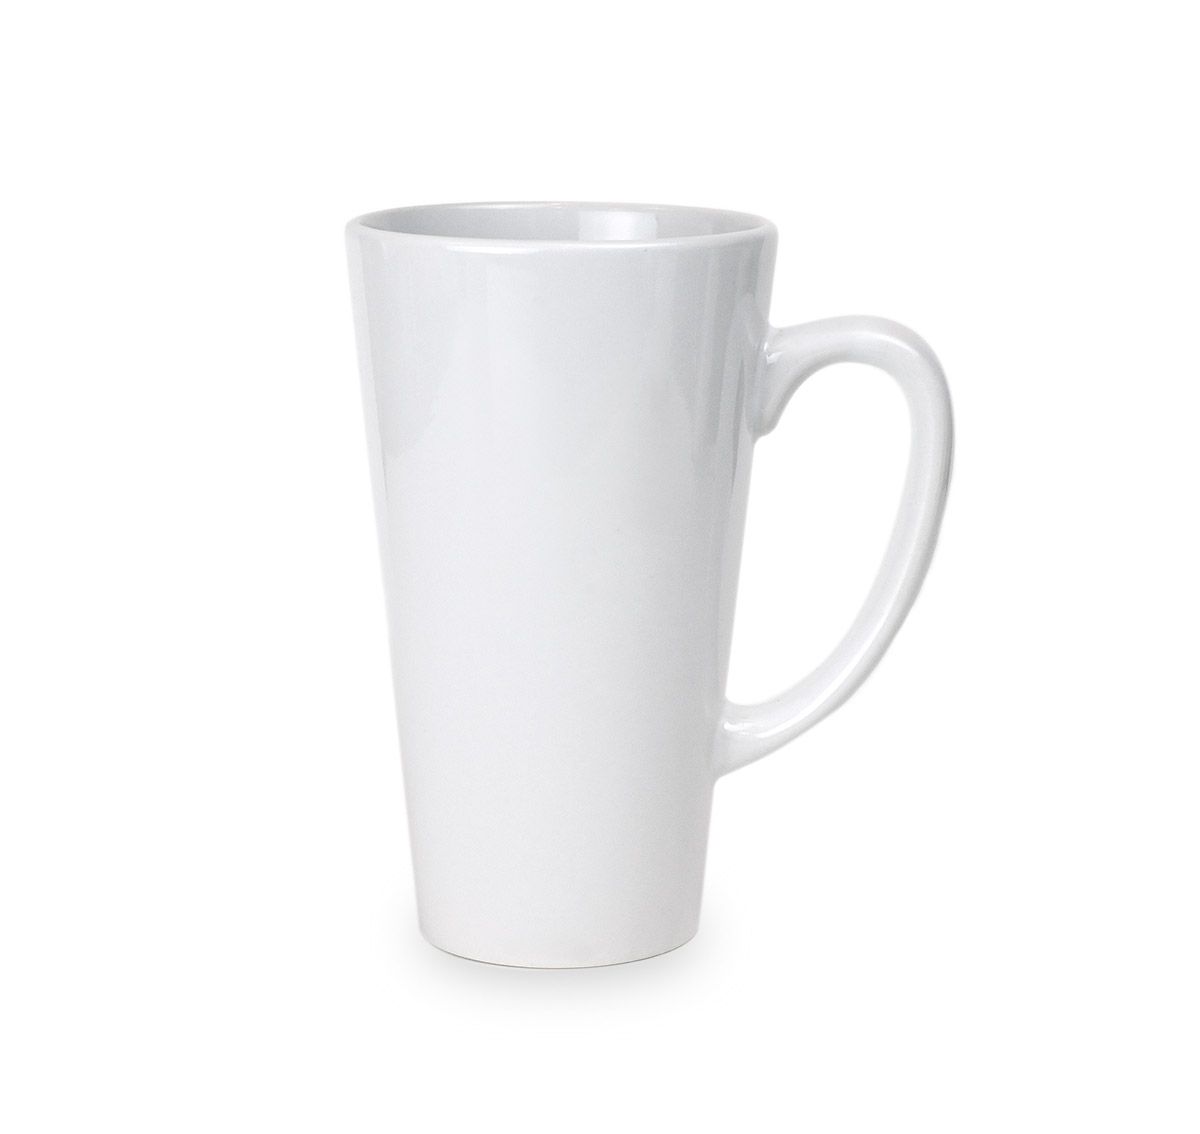 https://www.coastalbusiness.com/media/catalog/product/cache/adb5c70dc0636b5f388d8101981681de/1/7/17oz-ceramic-latte-mug_2.jpg